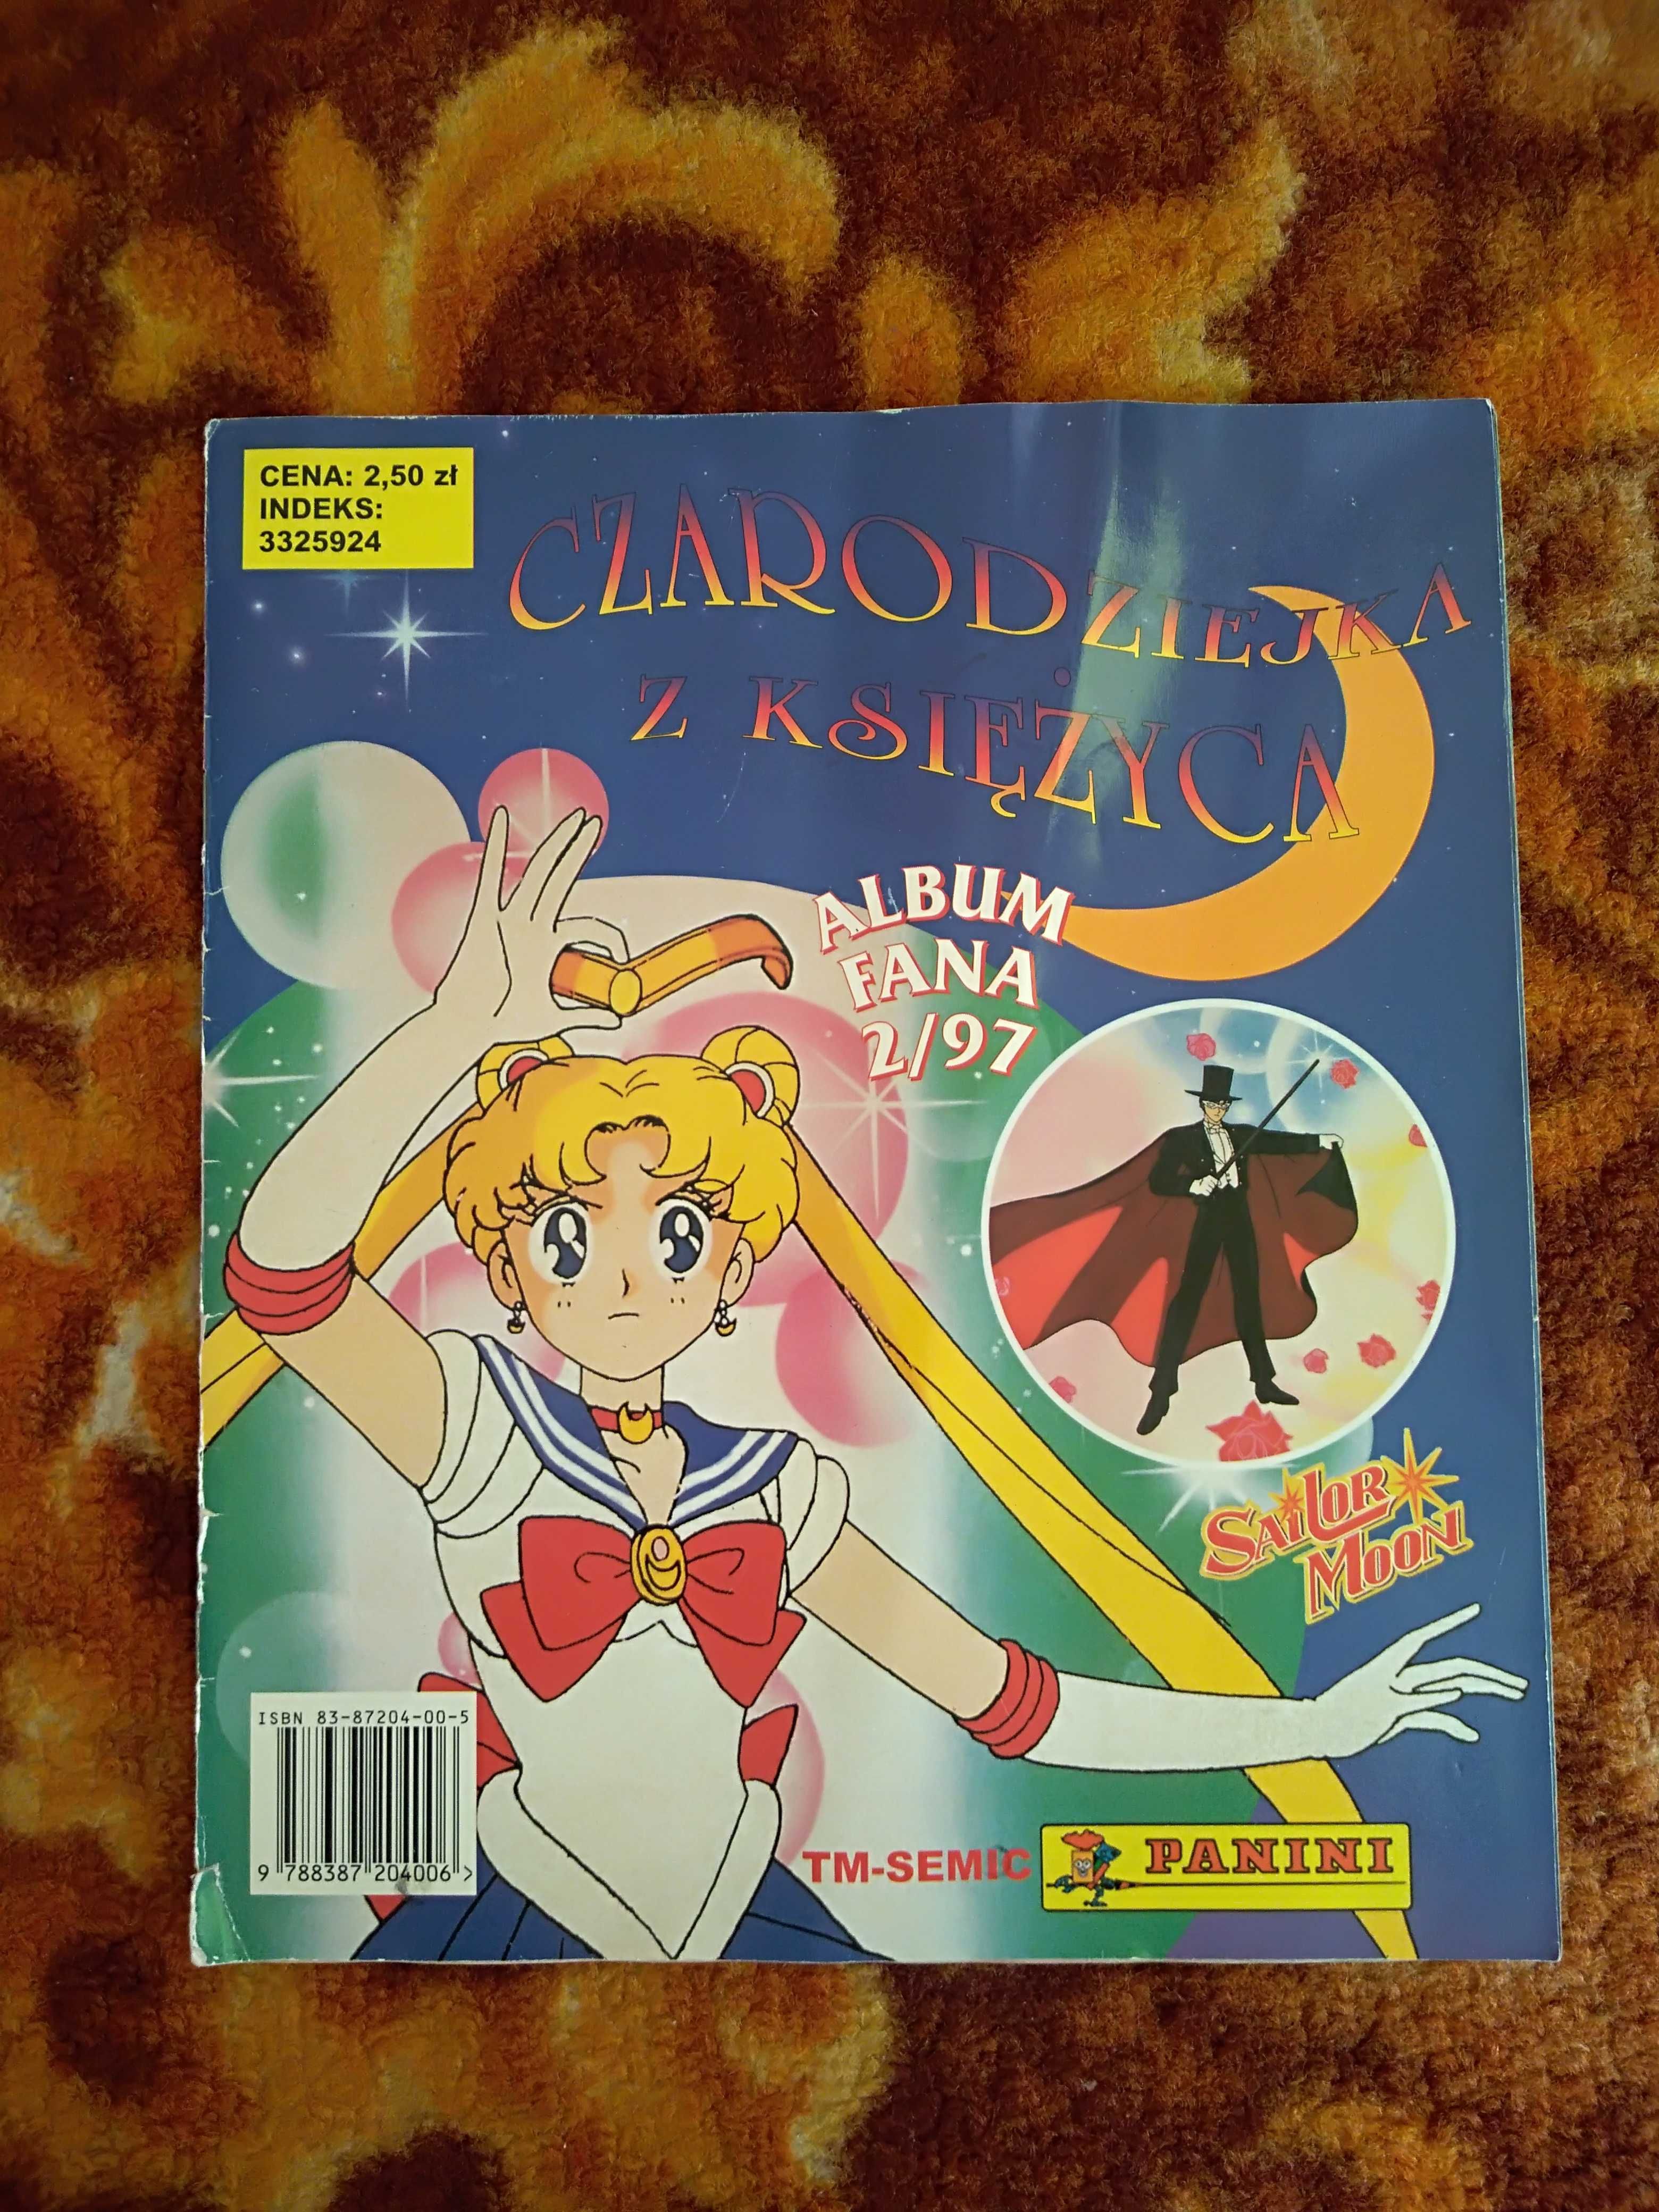 Czarodziejka z Księżyca Album fana 2/97 Sailor Moon kompletny